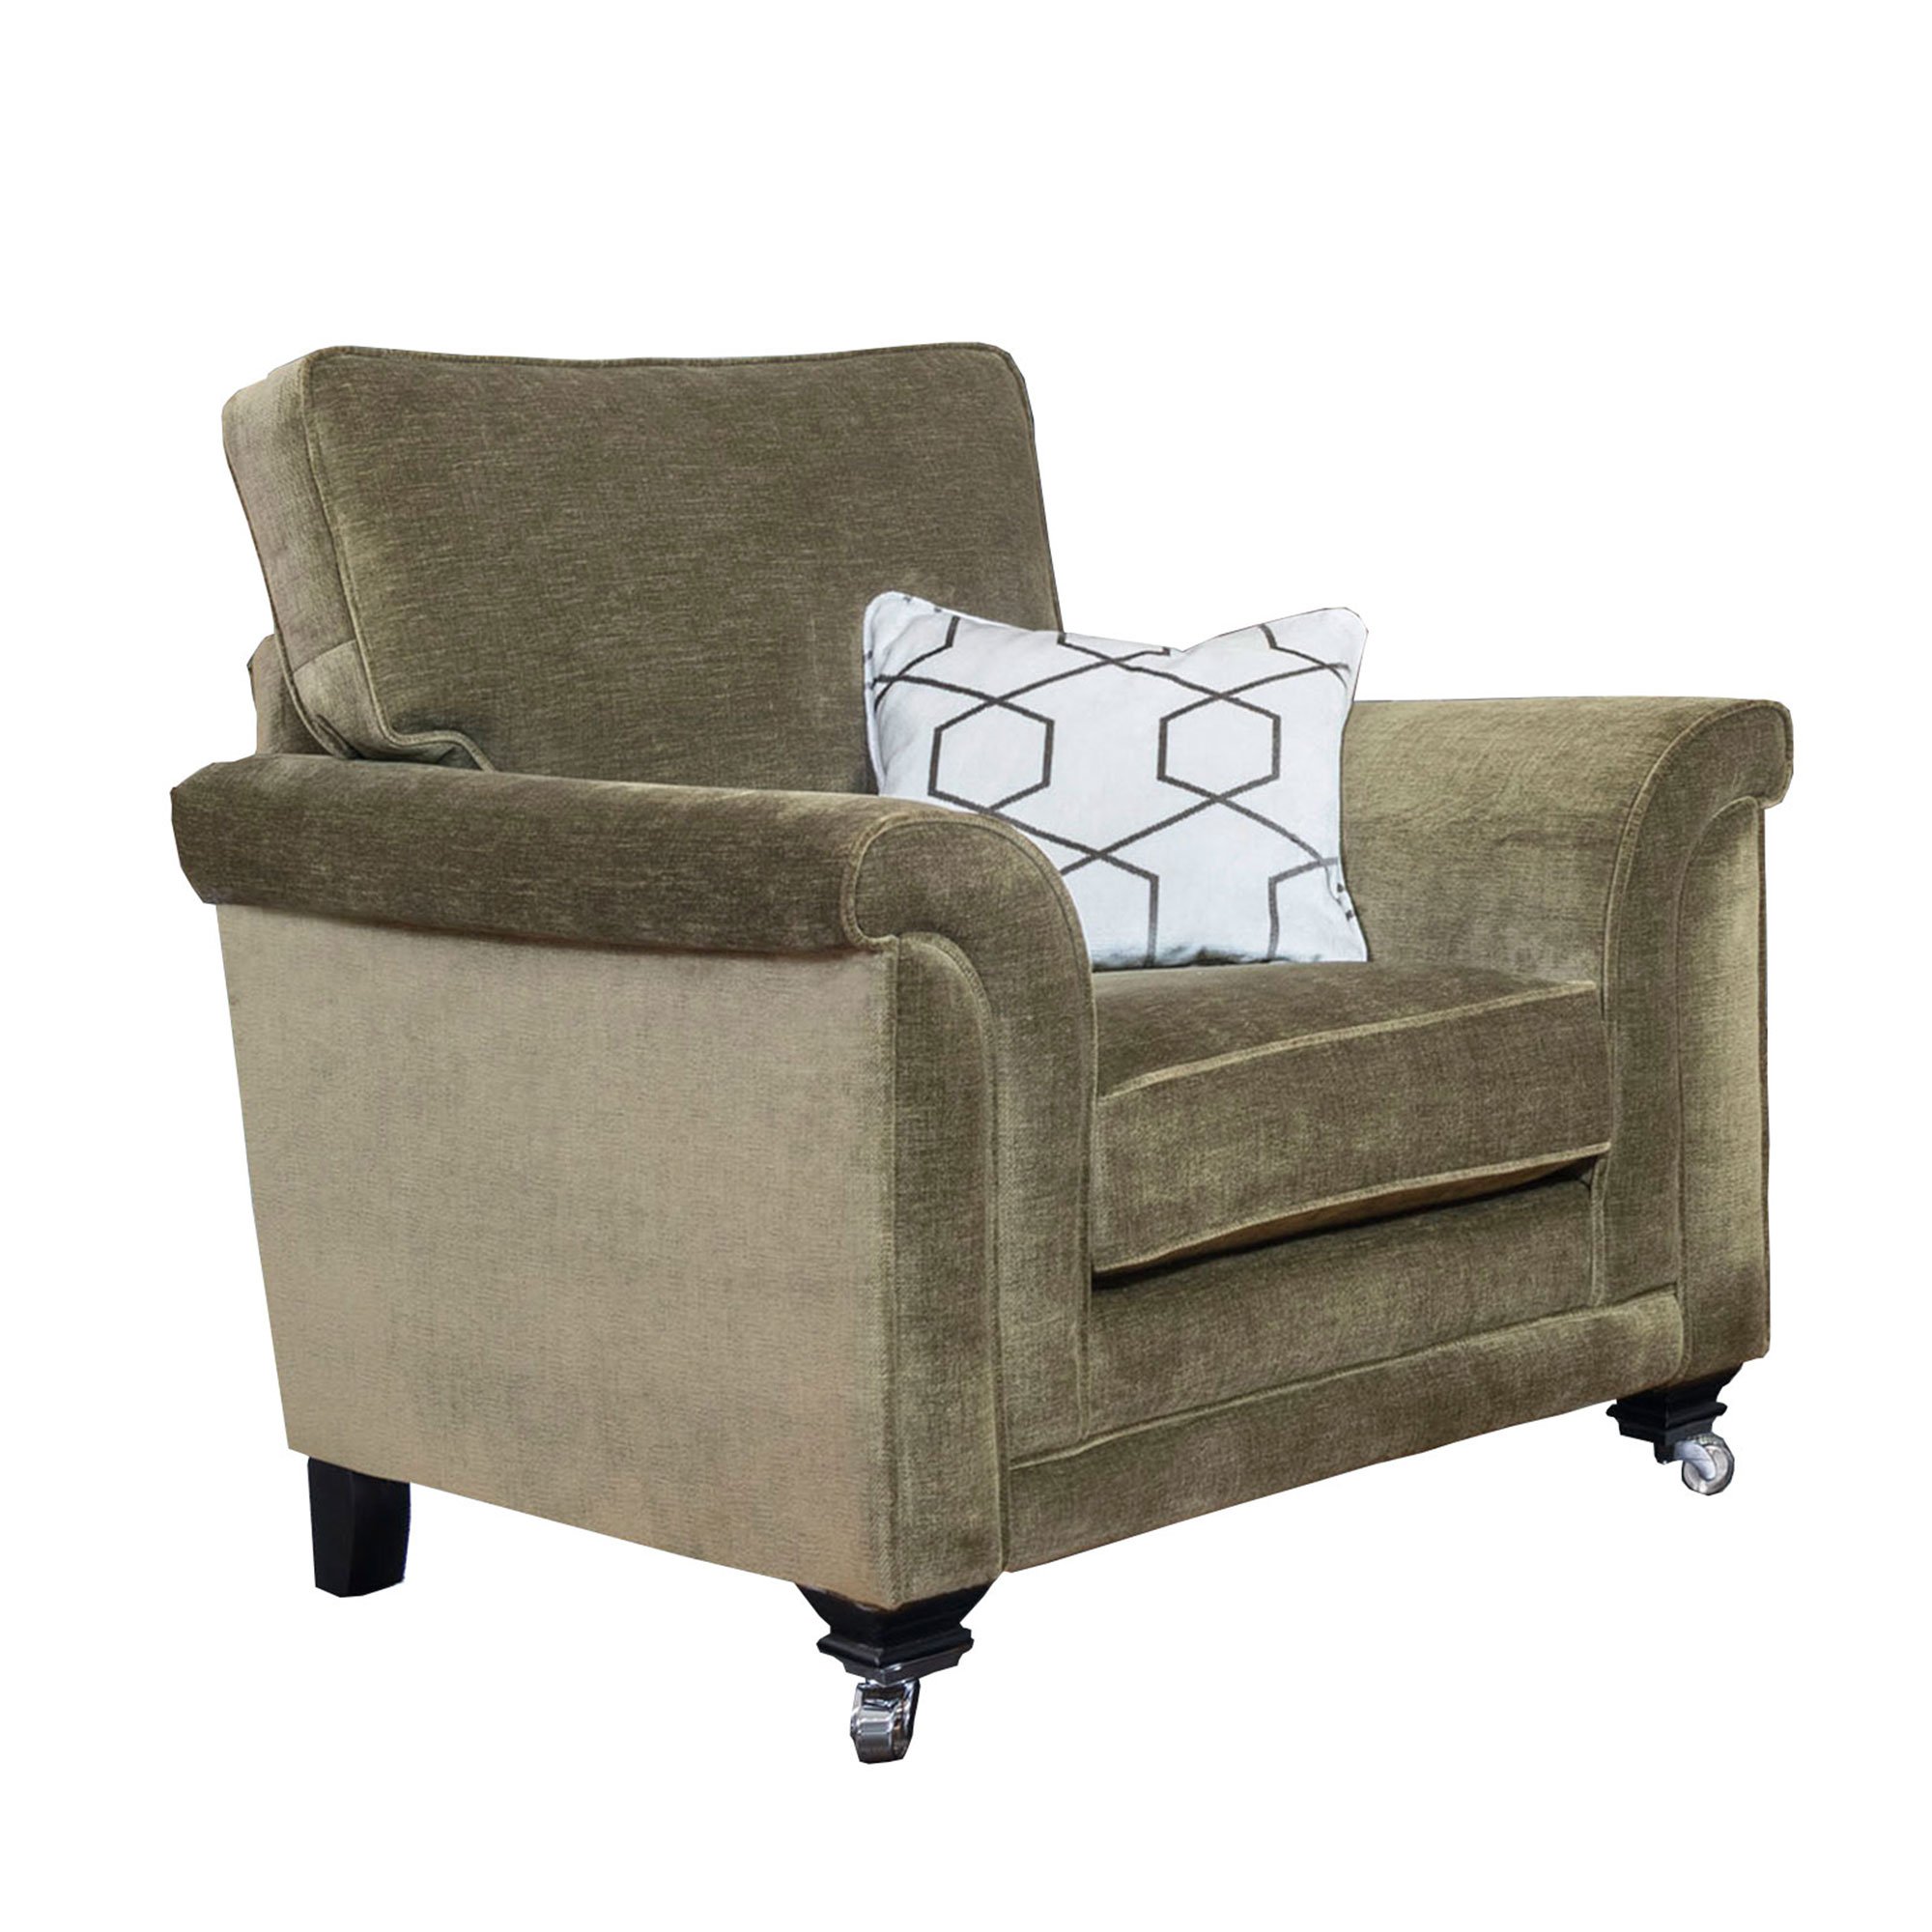 Kentwell Standard Chair, Green Fabric | Barker & Stonehouse